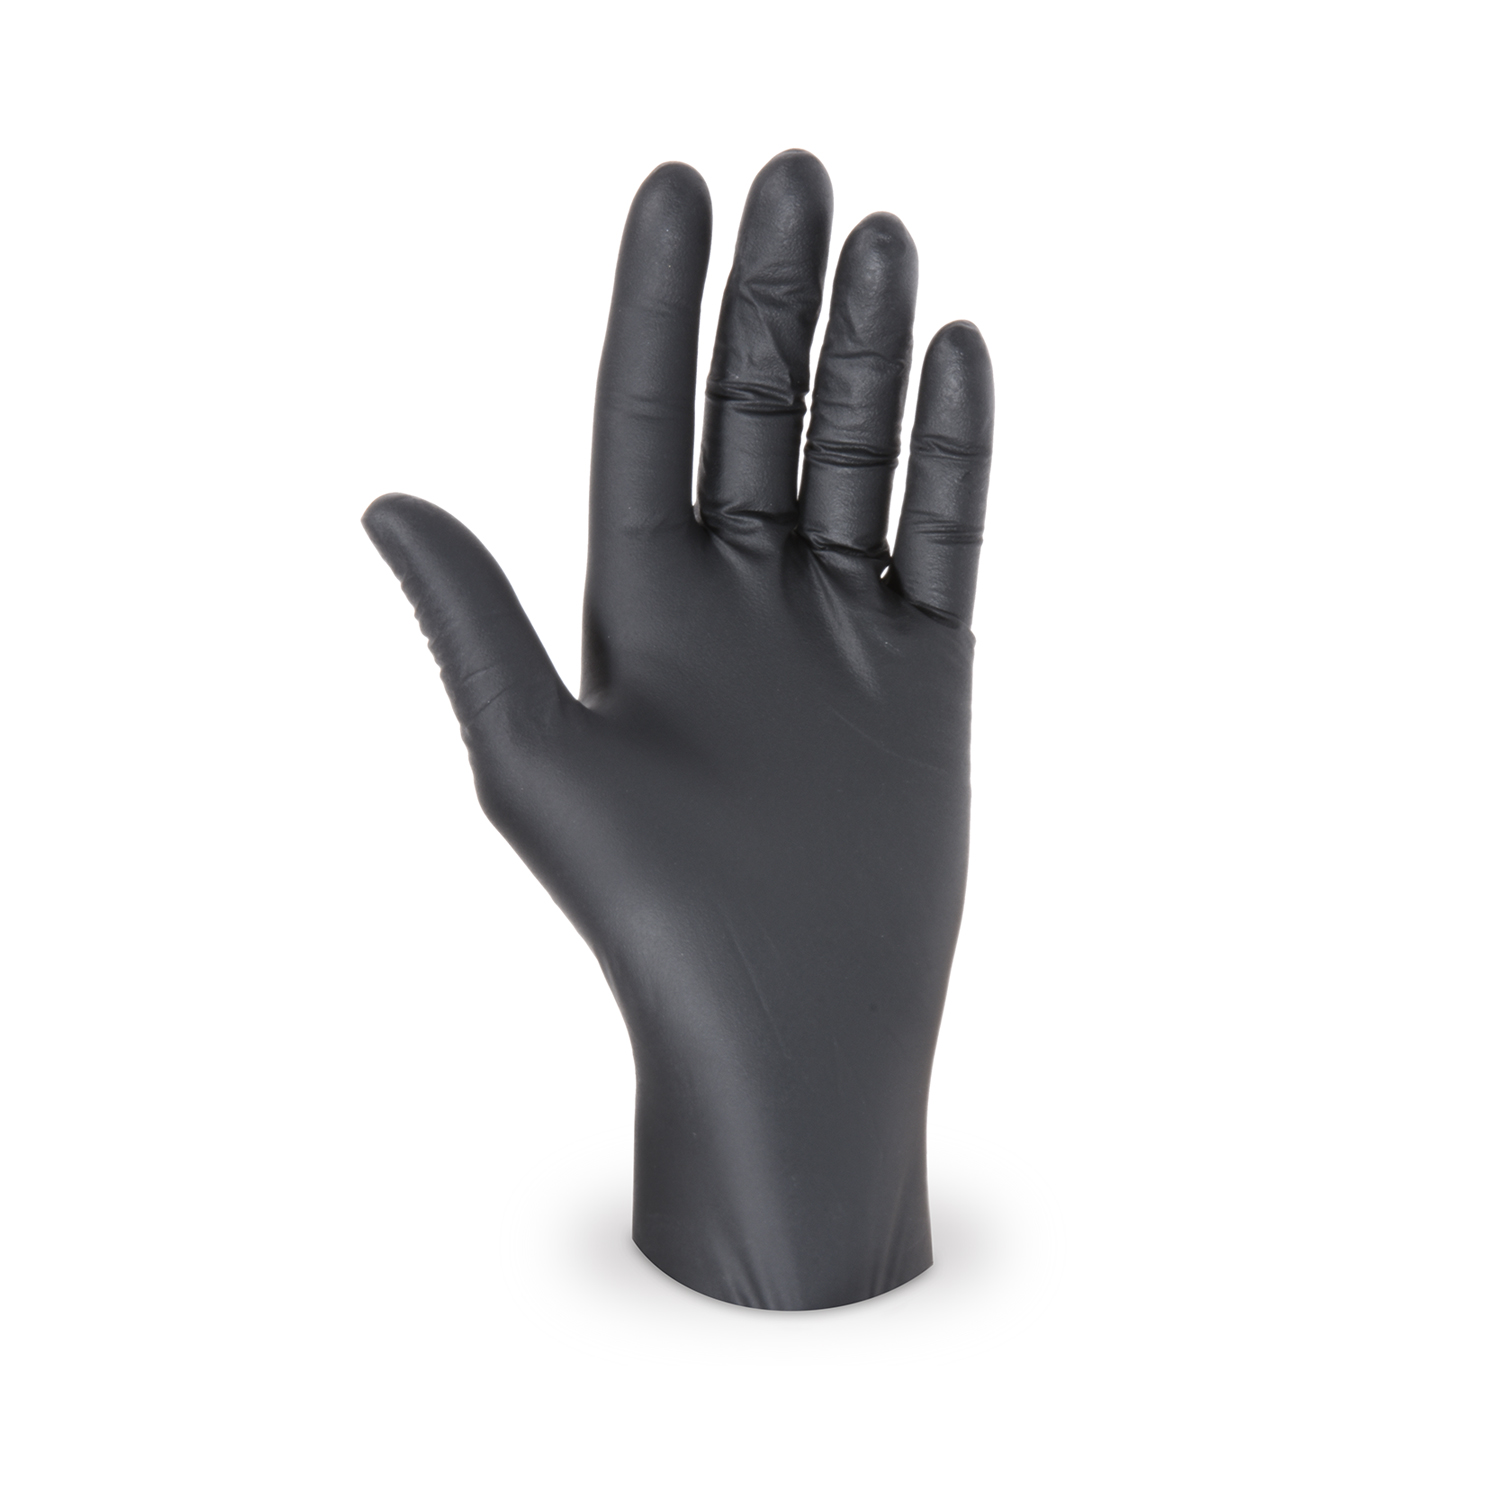 Handschuh (Nitril) ungepudert schwarz L - 100 Stück